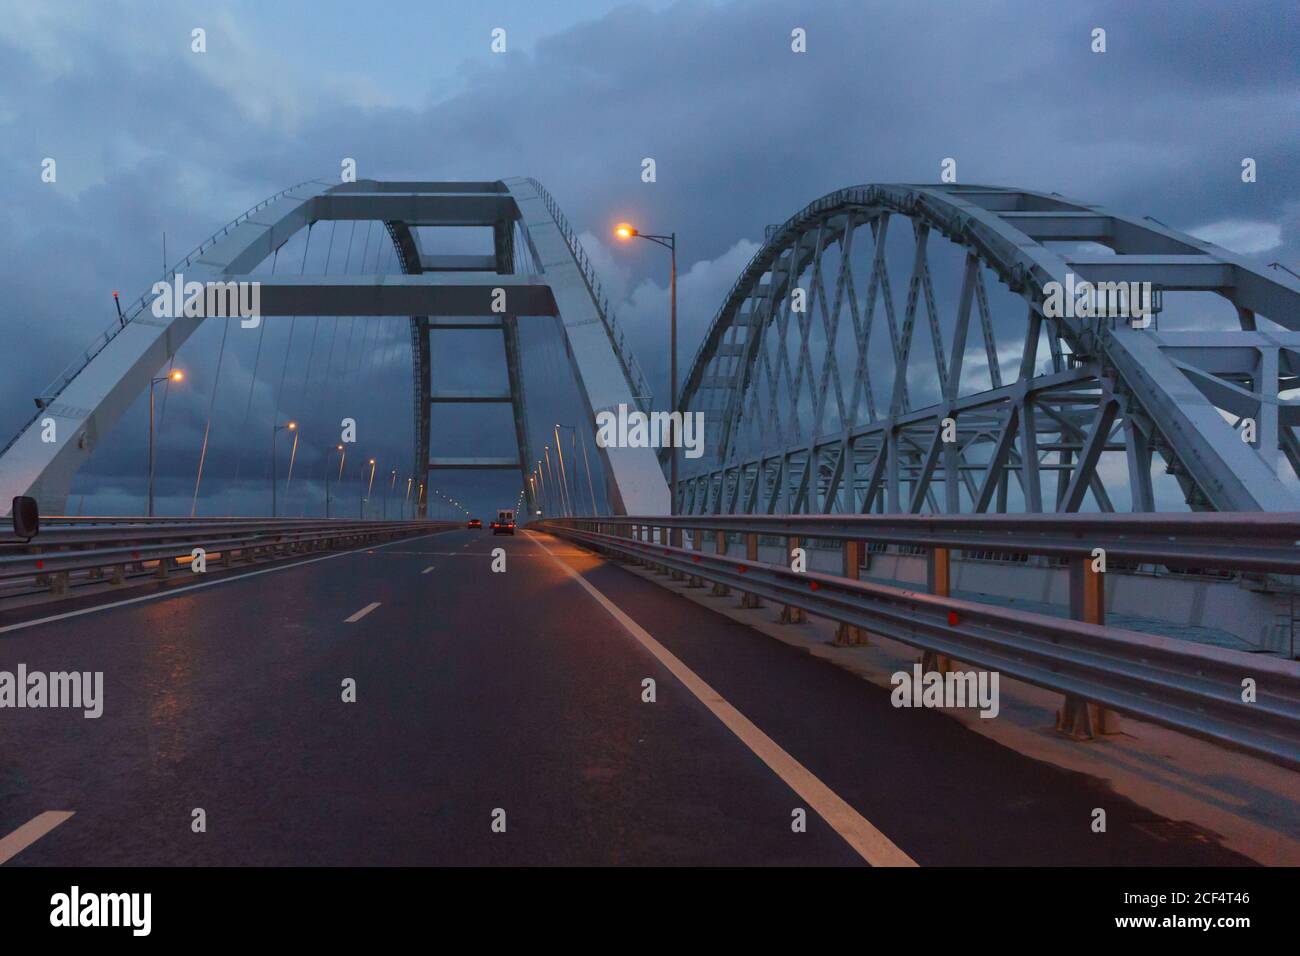 Les voitures se trouvent sous les arches du pont de Crimée en fin de soirée. Les feux sont allumés. Terne Banque D'Images